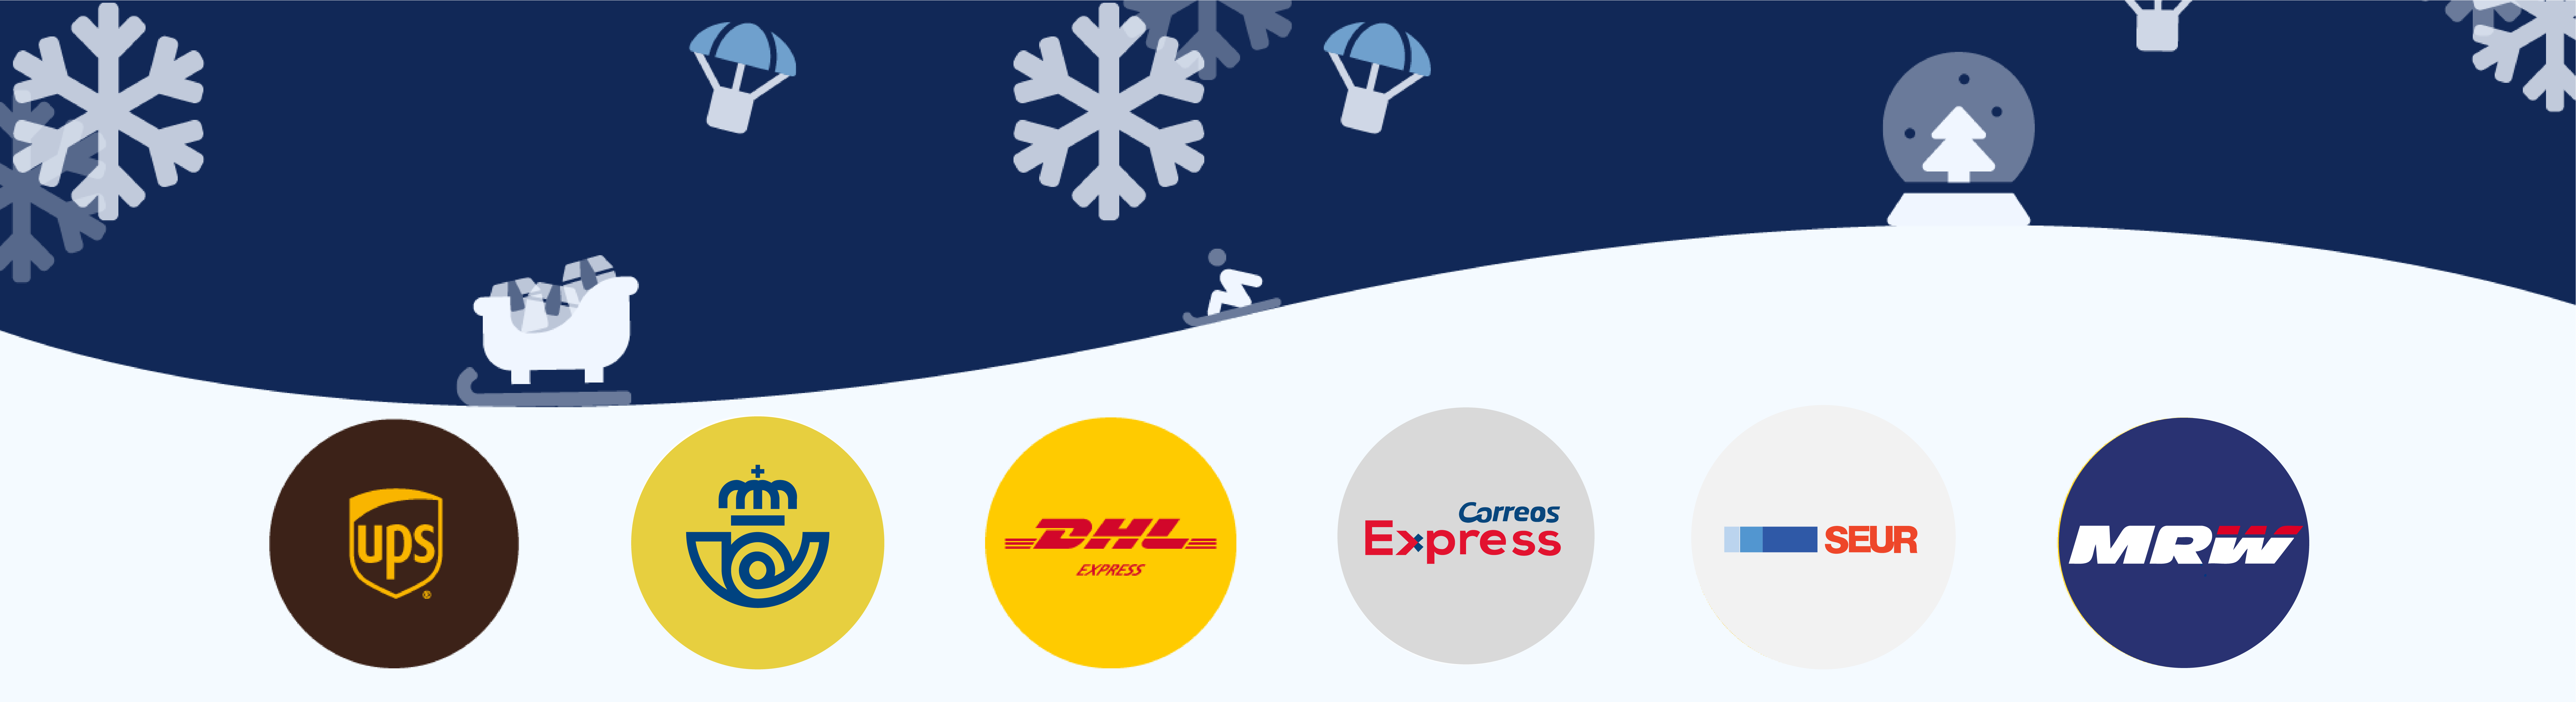 Plazos de entrega Navidad: Correos, Correos Express, UPS, SEUR, MRW…